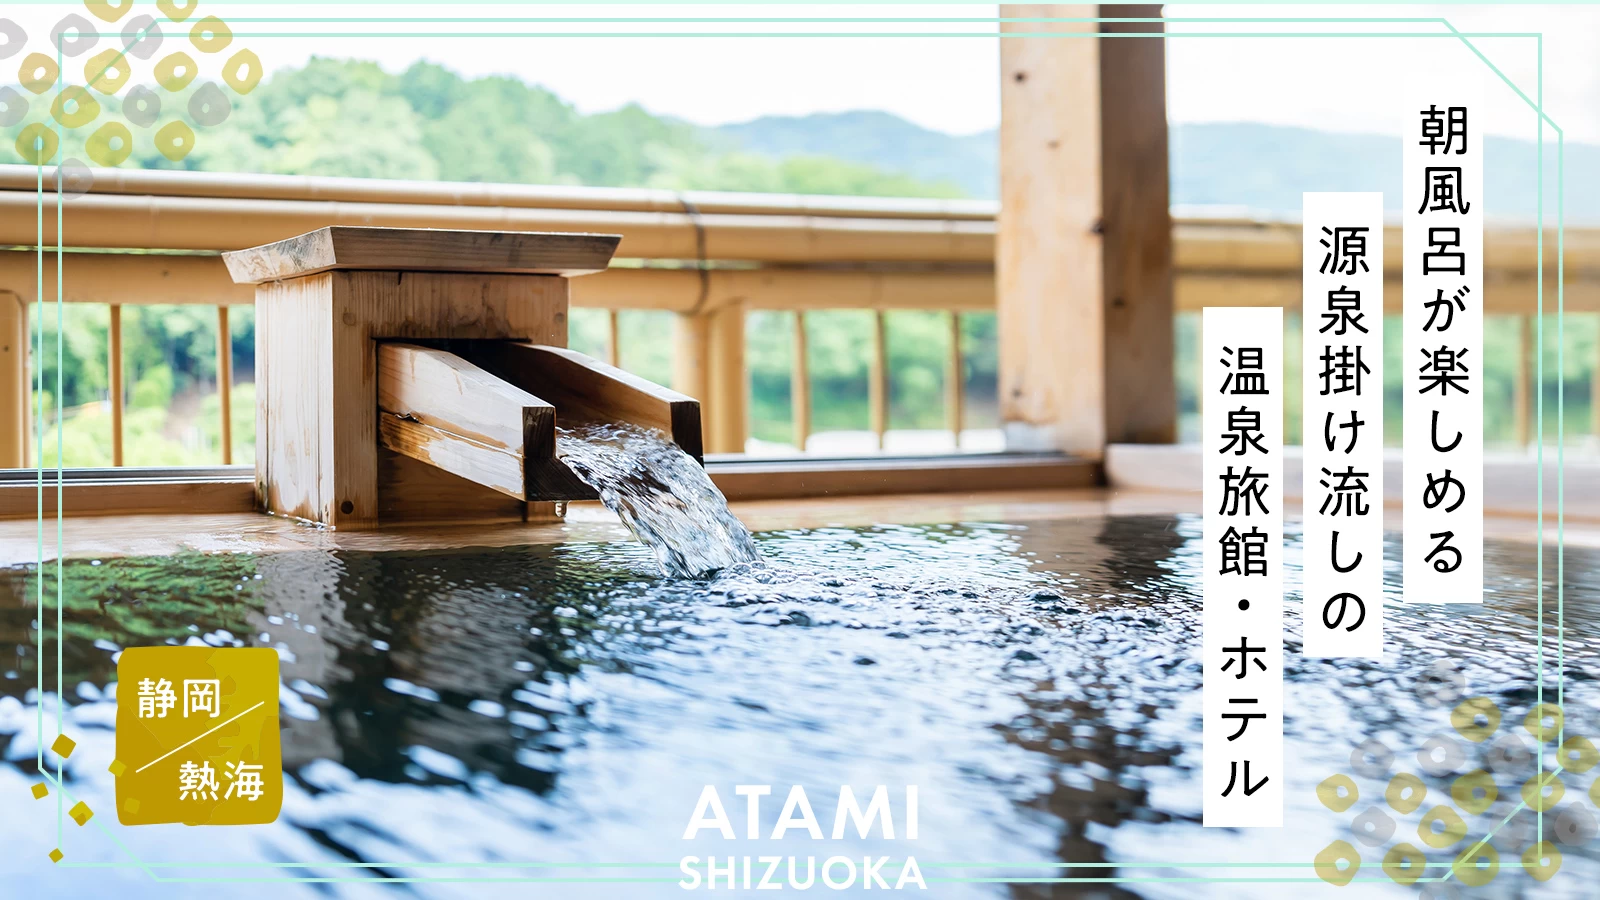 【静岡・熱海】朝風呂が楽しめる源泉掛け流しの温泉旅館・ホテル9選